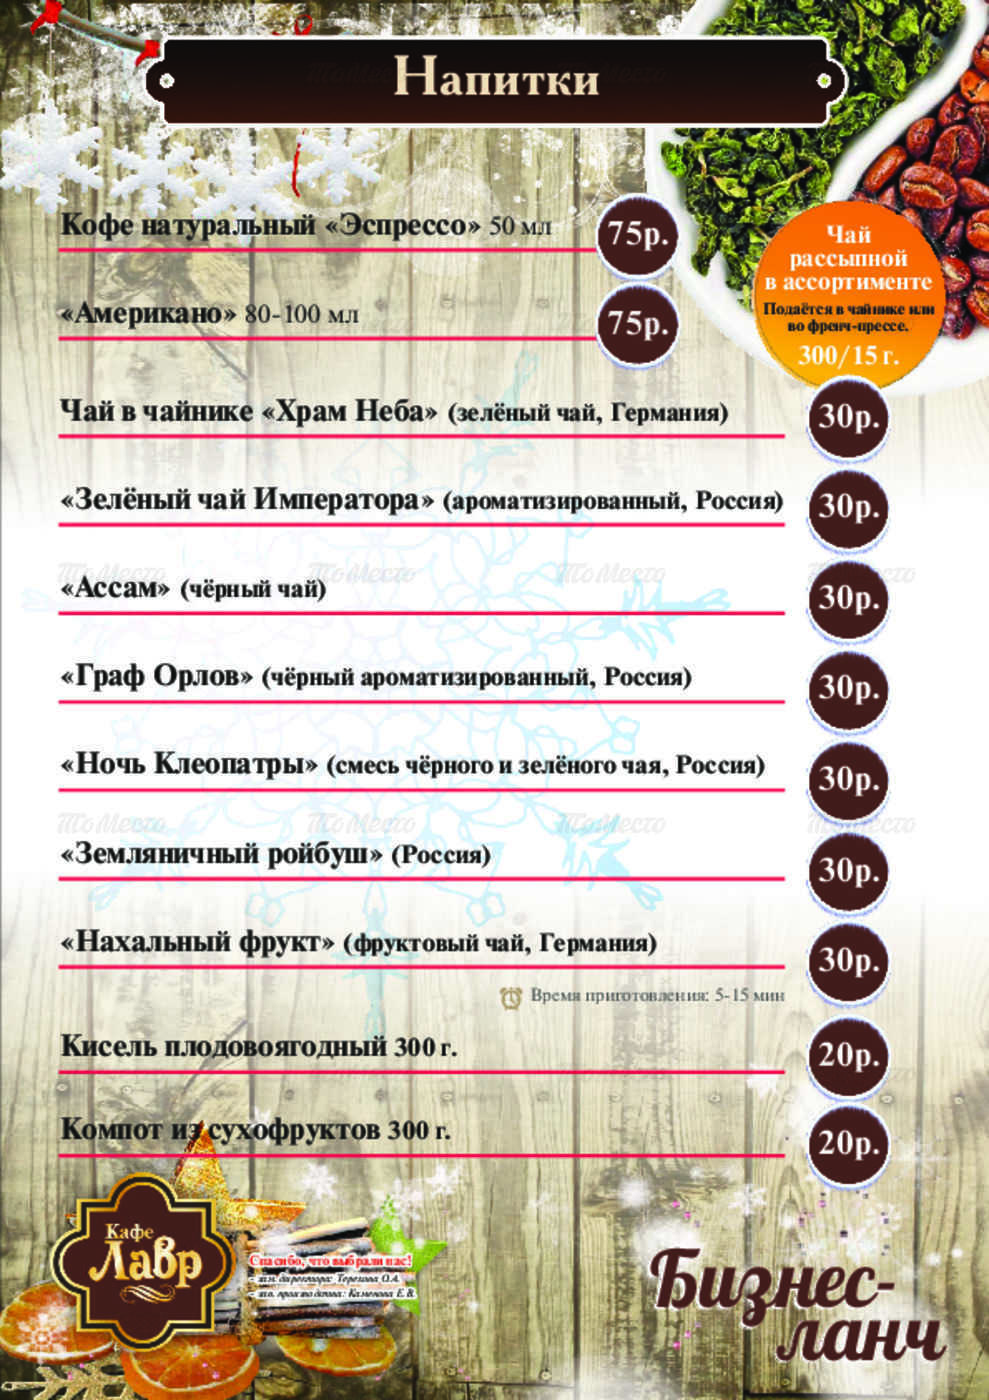 Кафе лавр омск официальный сайт меню цены